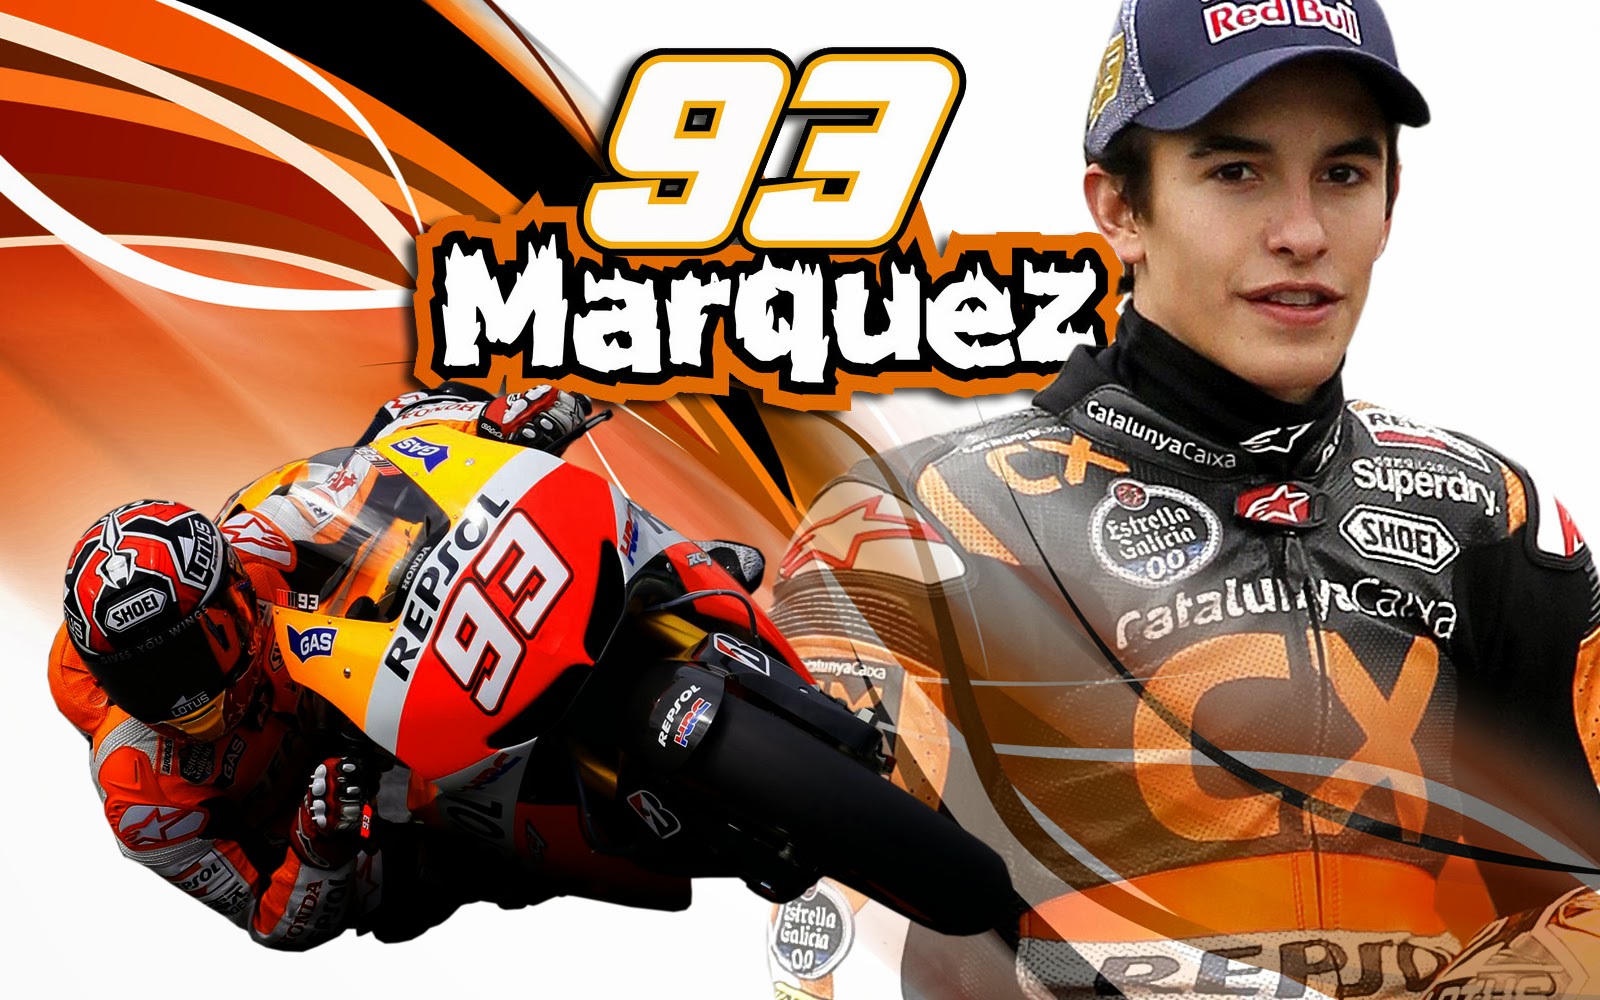 Marc Marquez 93 Wallpaper Hd Honda Repsol 06